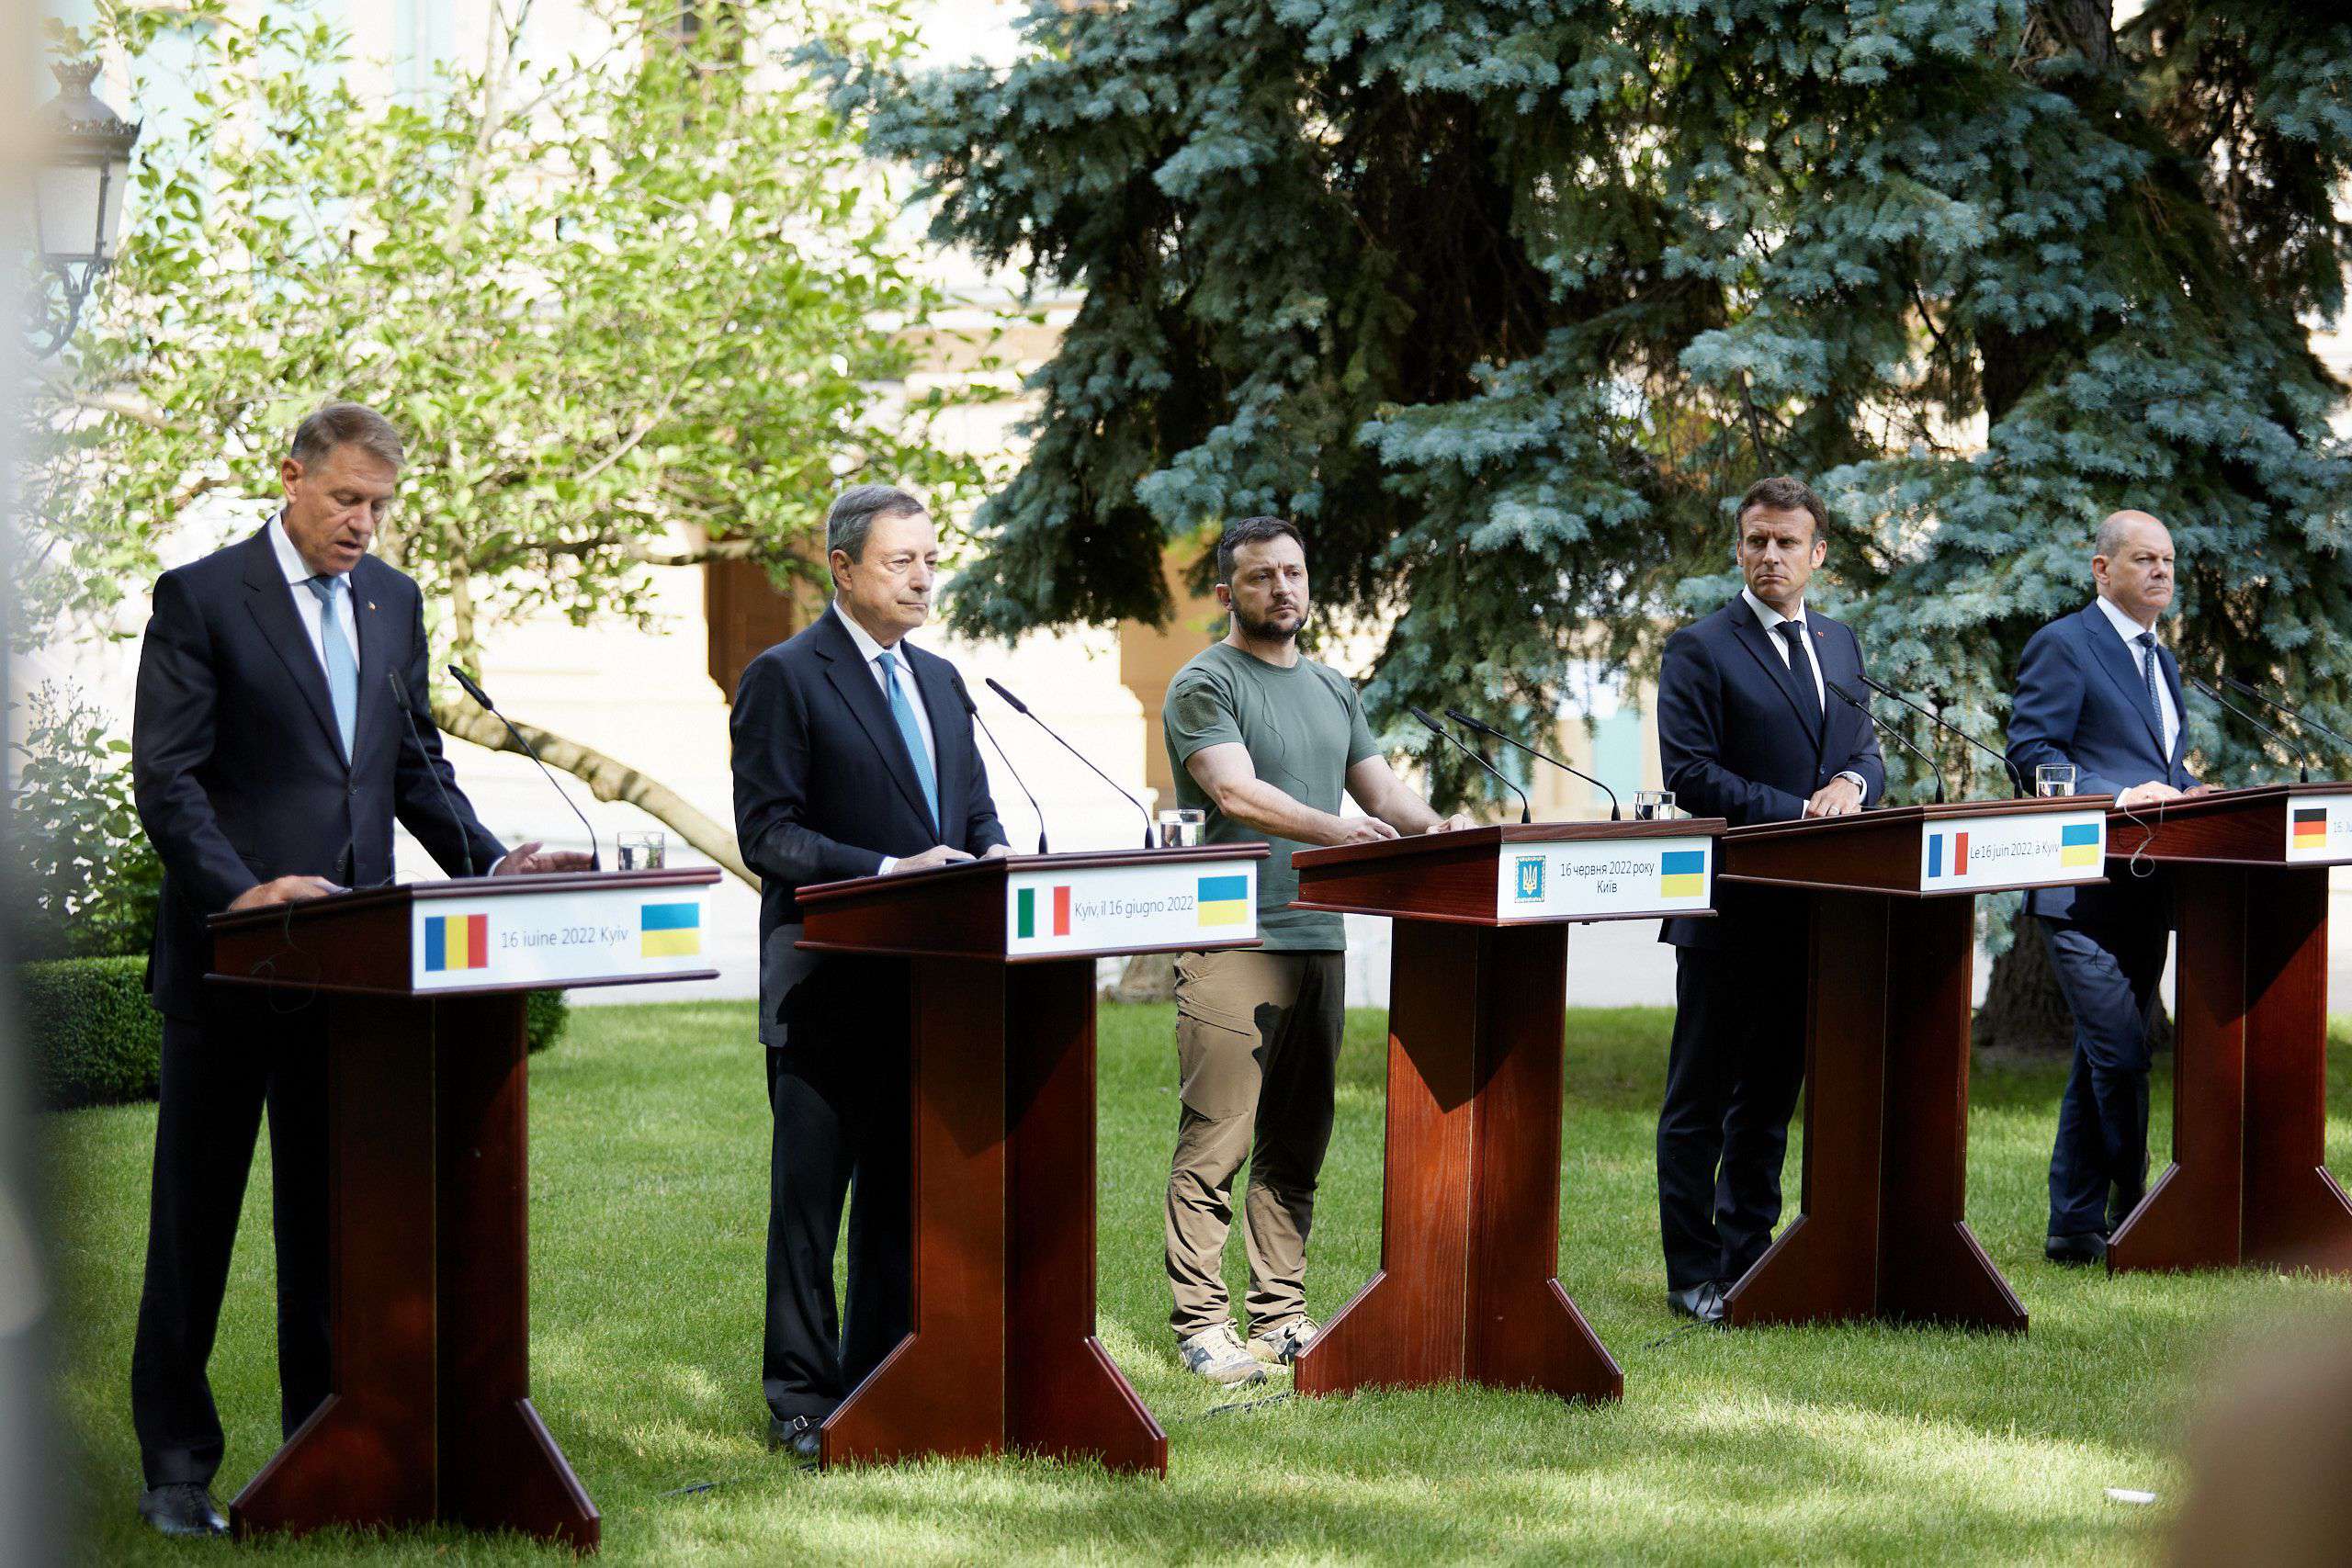 Rencontre du Président ukrainien avec les dirigeants européens à Kyiv, Ukraine - 16 juin 
Crédits : EyePress News/Shutterstock